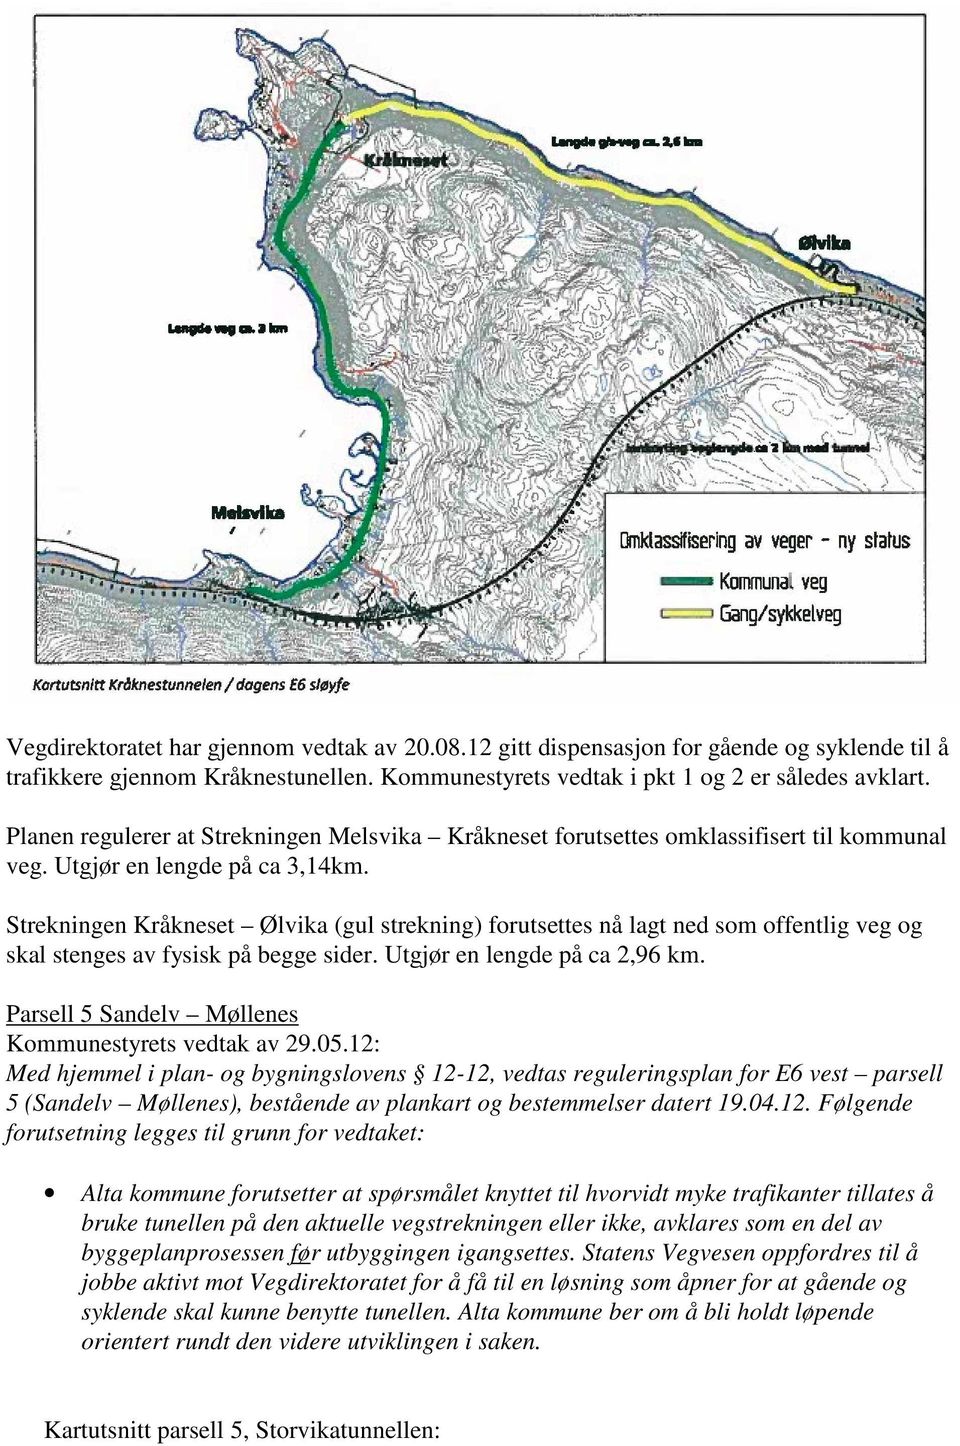 Strekningen Kråkneset Ølvika (gul strekning) forutsettes nå lagt ned som offentlig veg og skal stenges av fysisk på begge sider. Utgjør en lengde på ca 2,96 km.